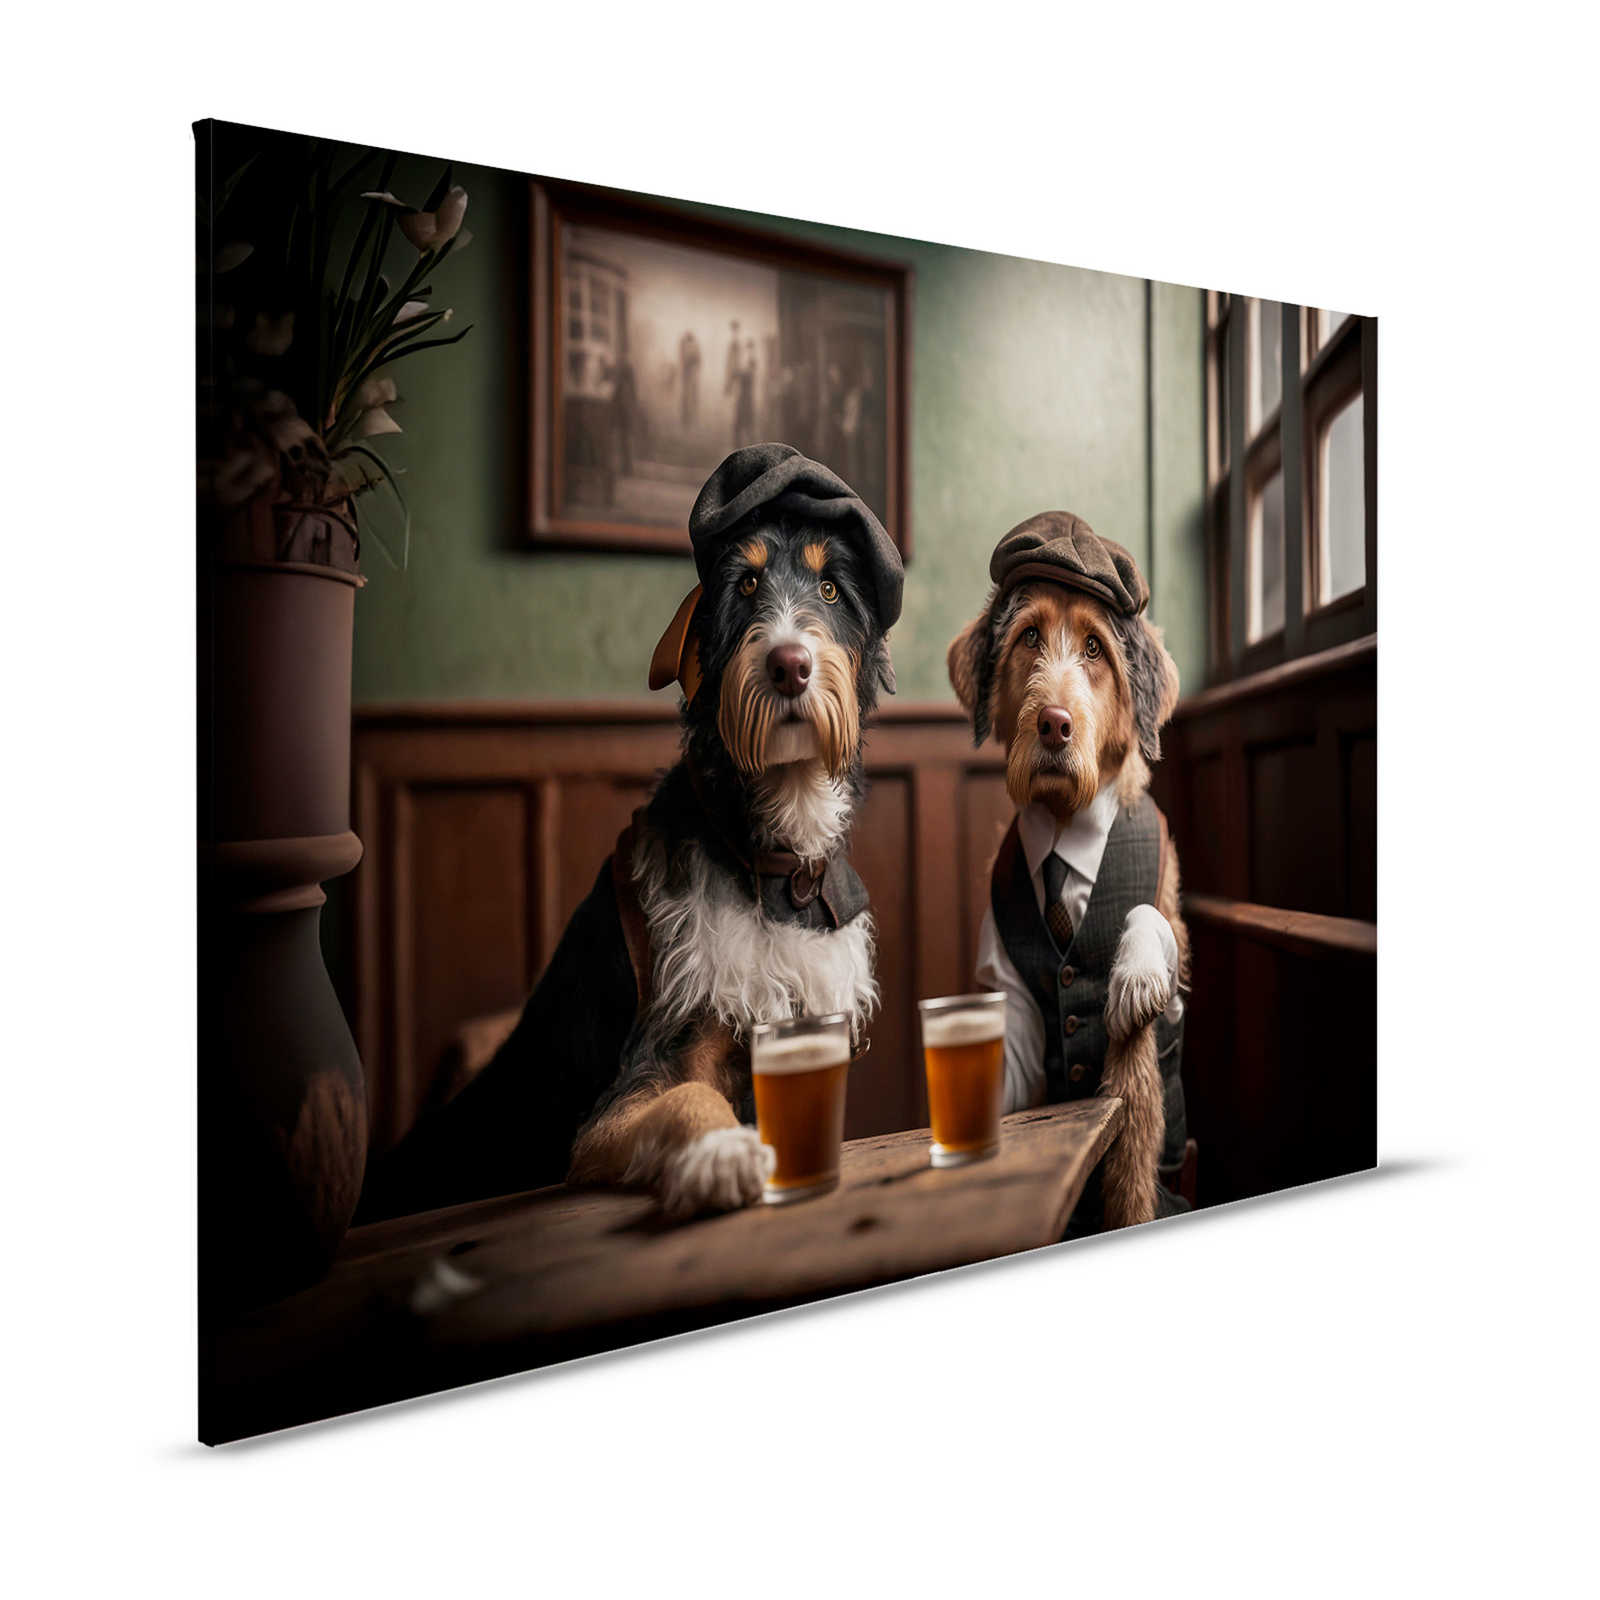 KI Canvas schilderij »Doggy Bar 3« - 120 cm x 80 cm
